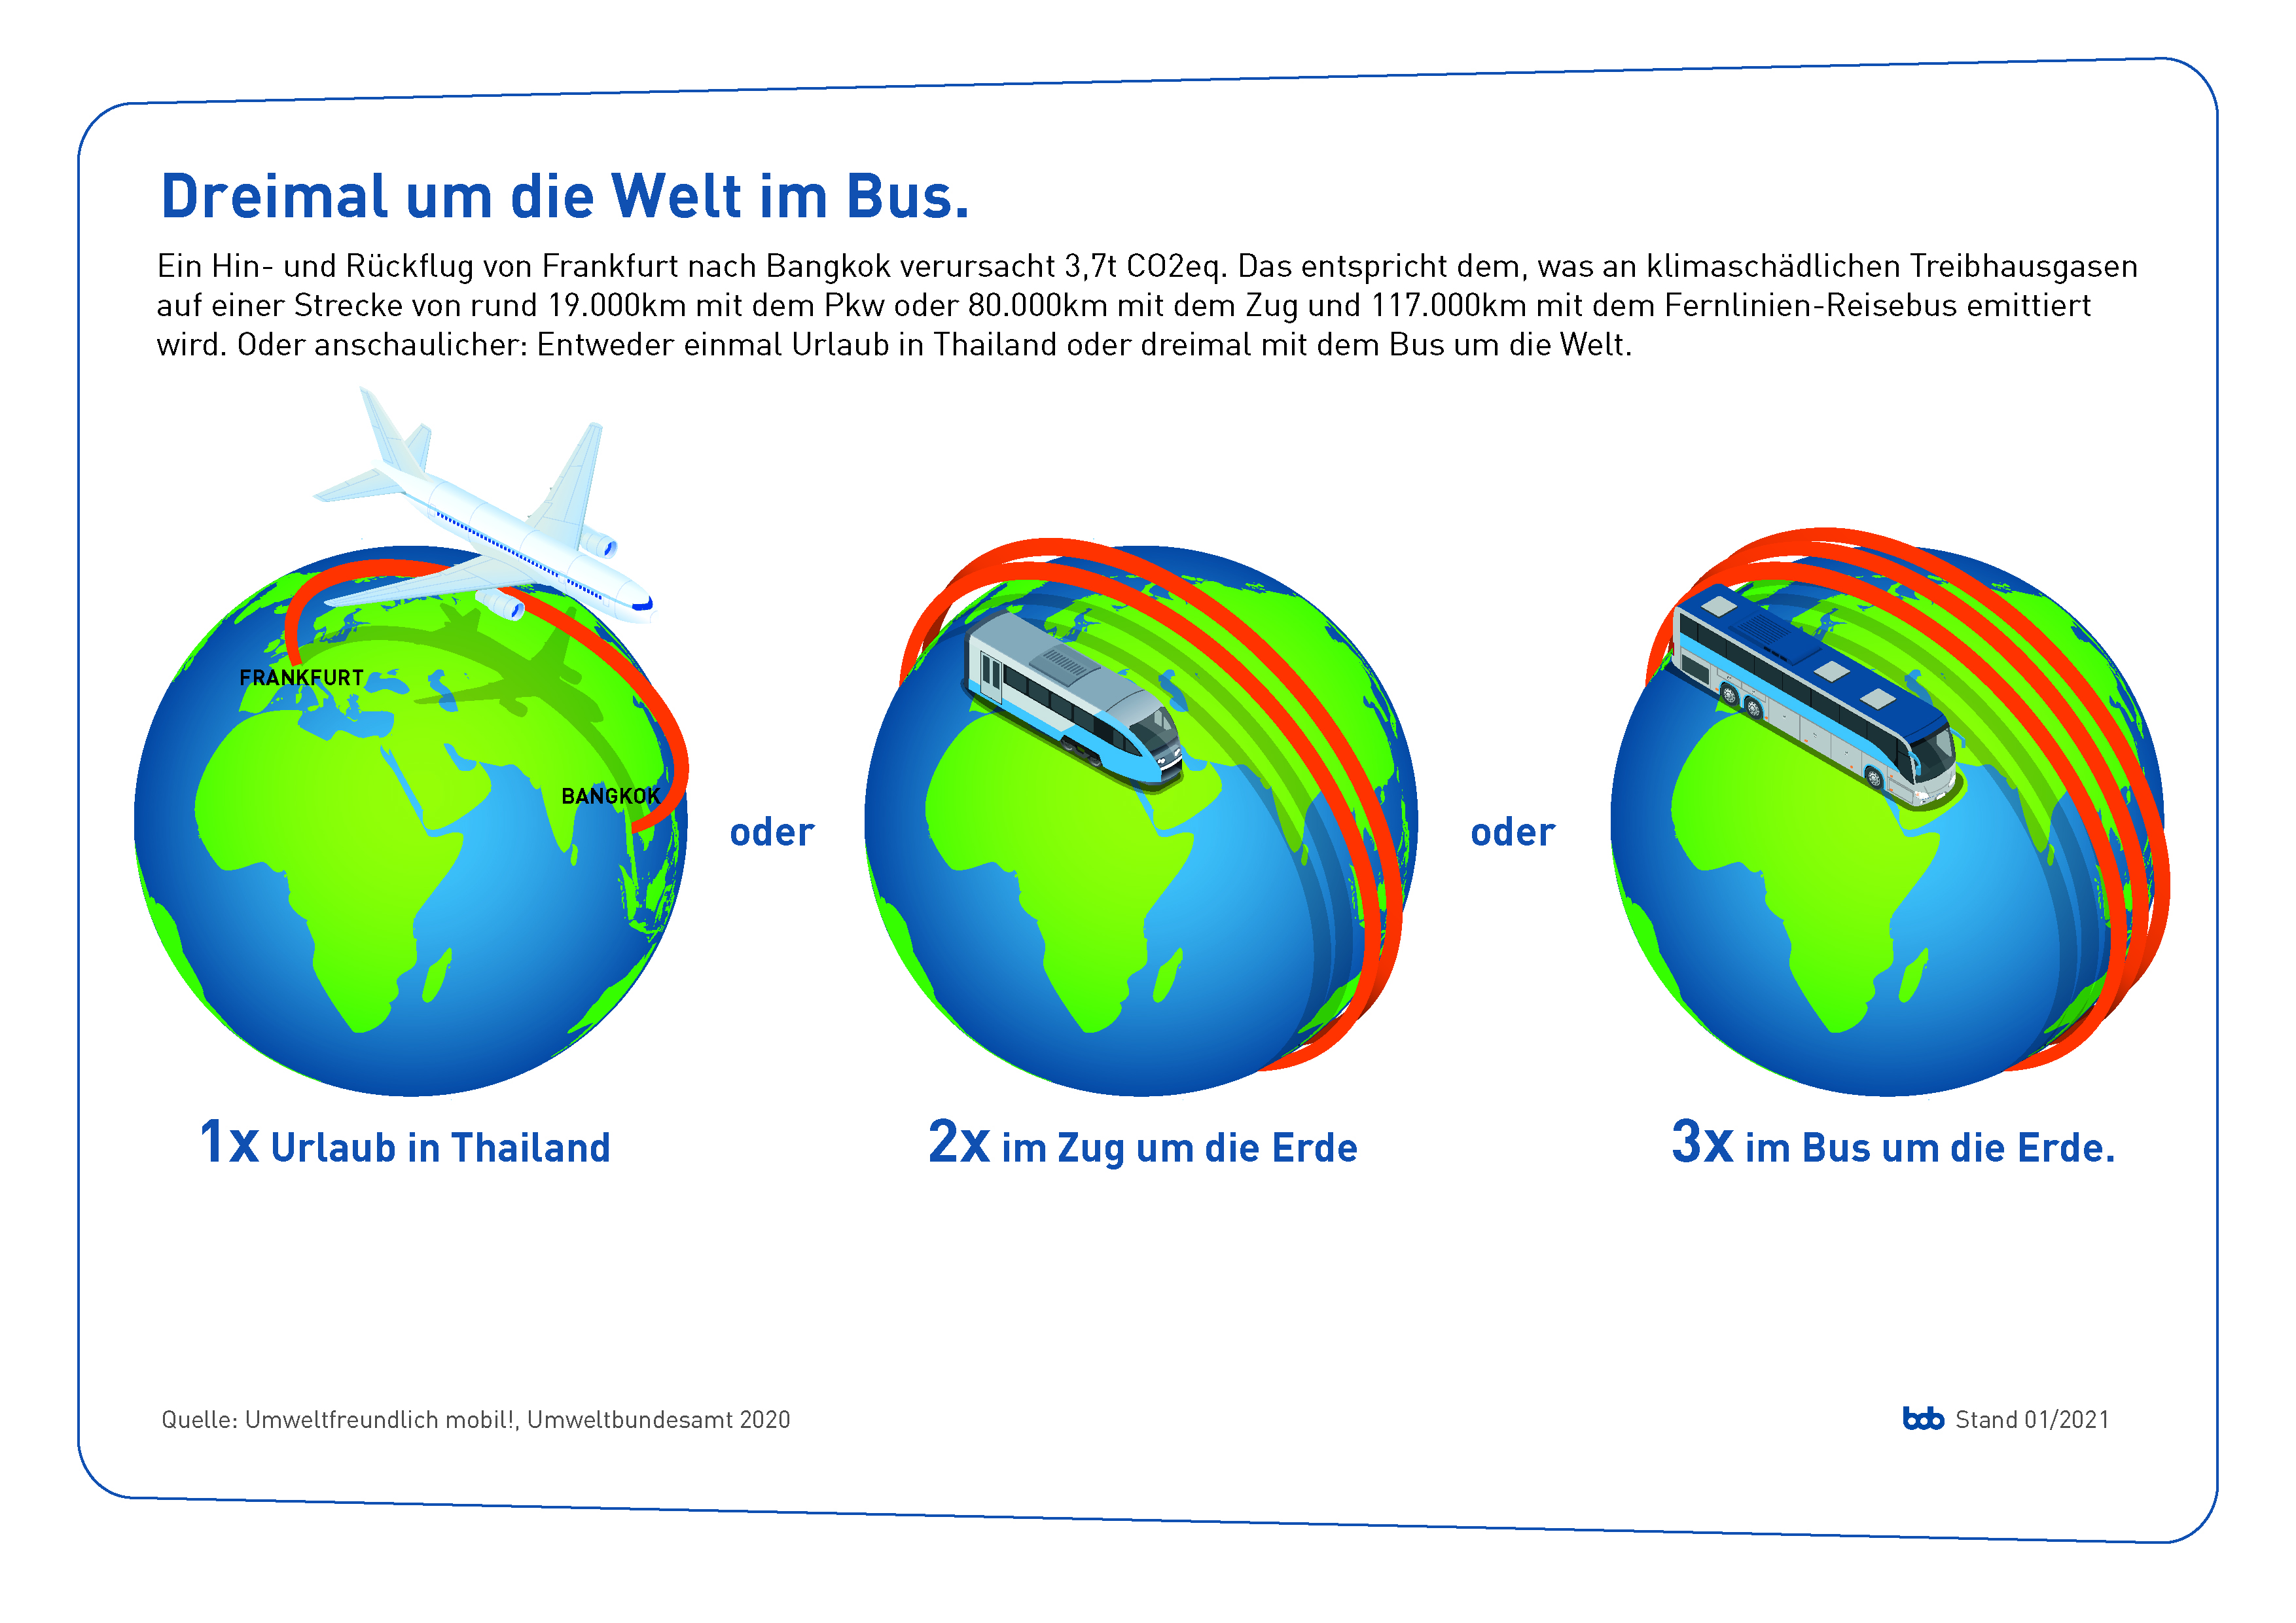 bdo_Grafik_dreimal-um-die-welt-im-bus